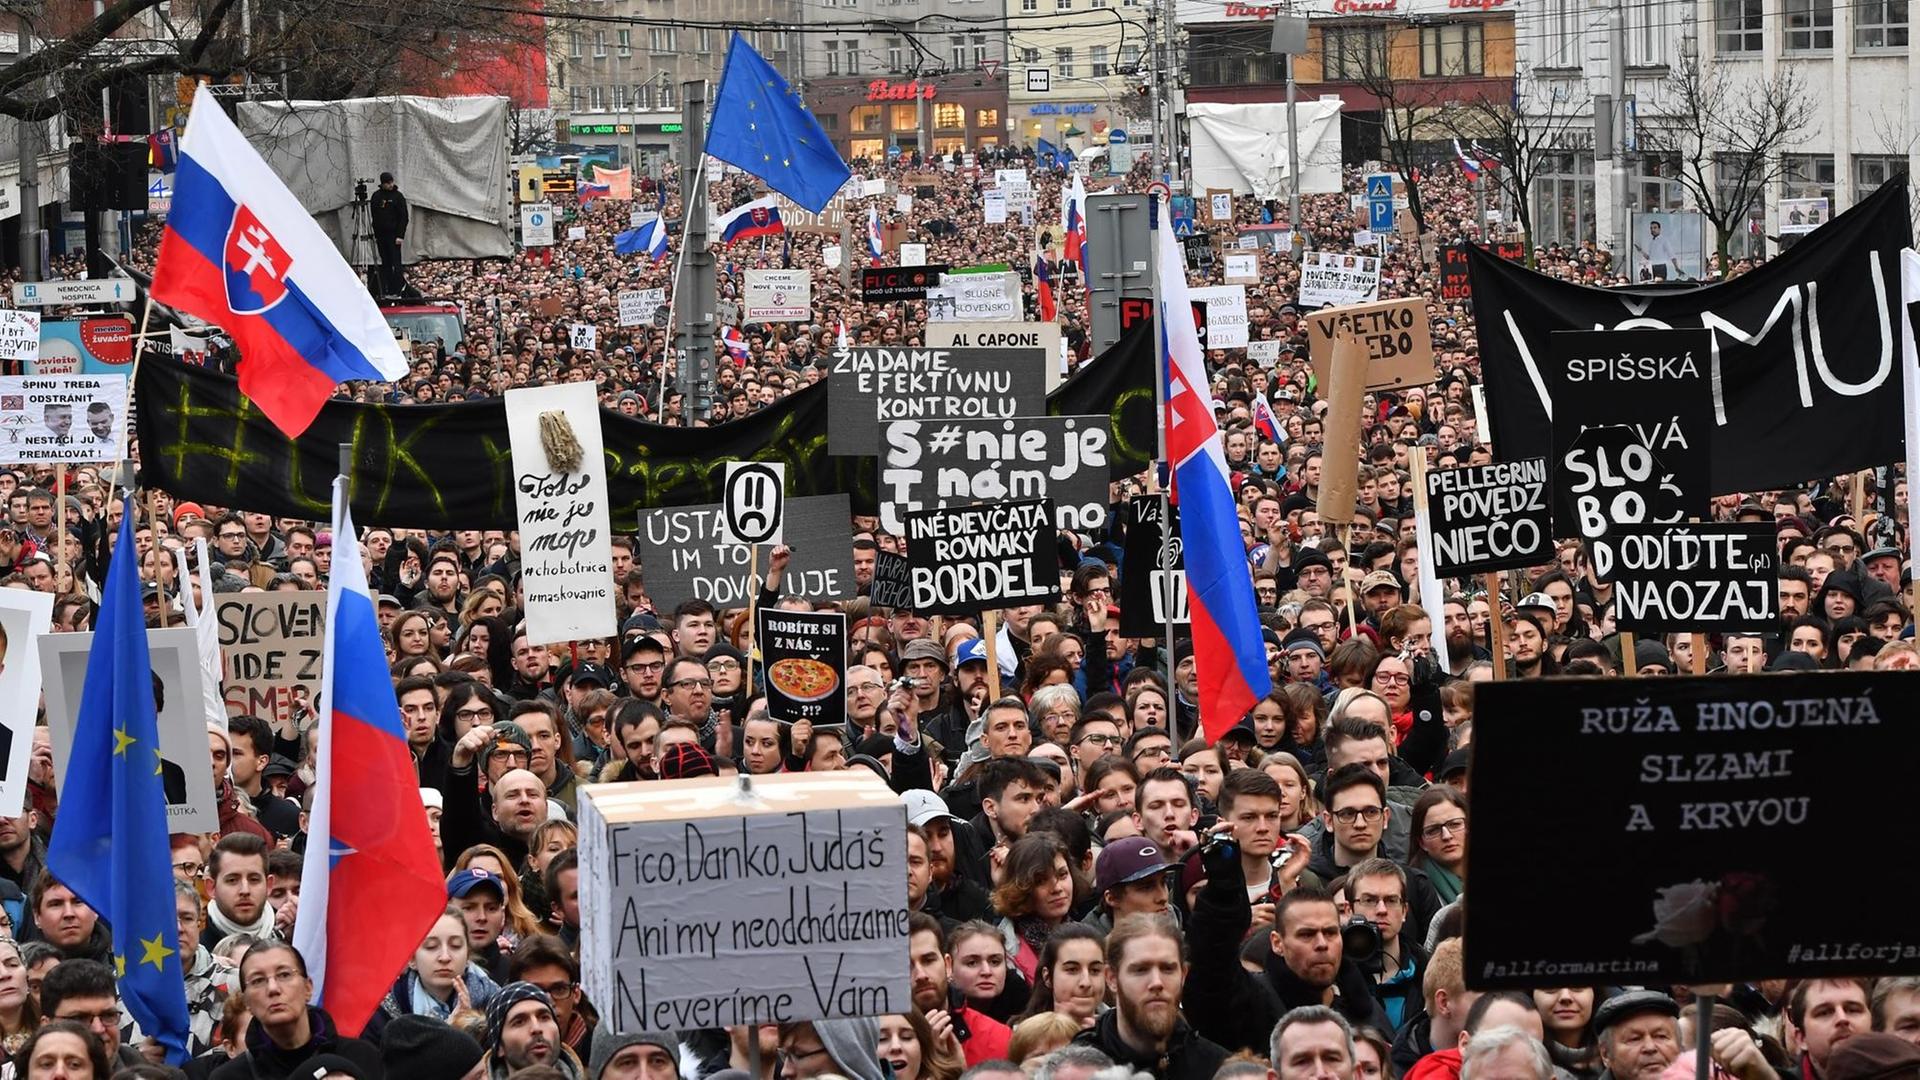 Proteste nach der Ermordung von Jan Kuciak and seiner Verlobten Martina Kusnirova am 16. März 2018 in Bratislava, Slowakei.